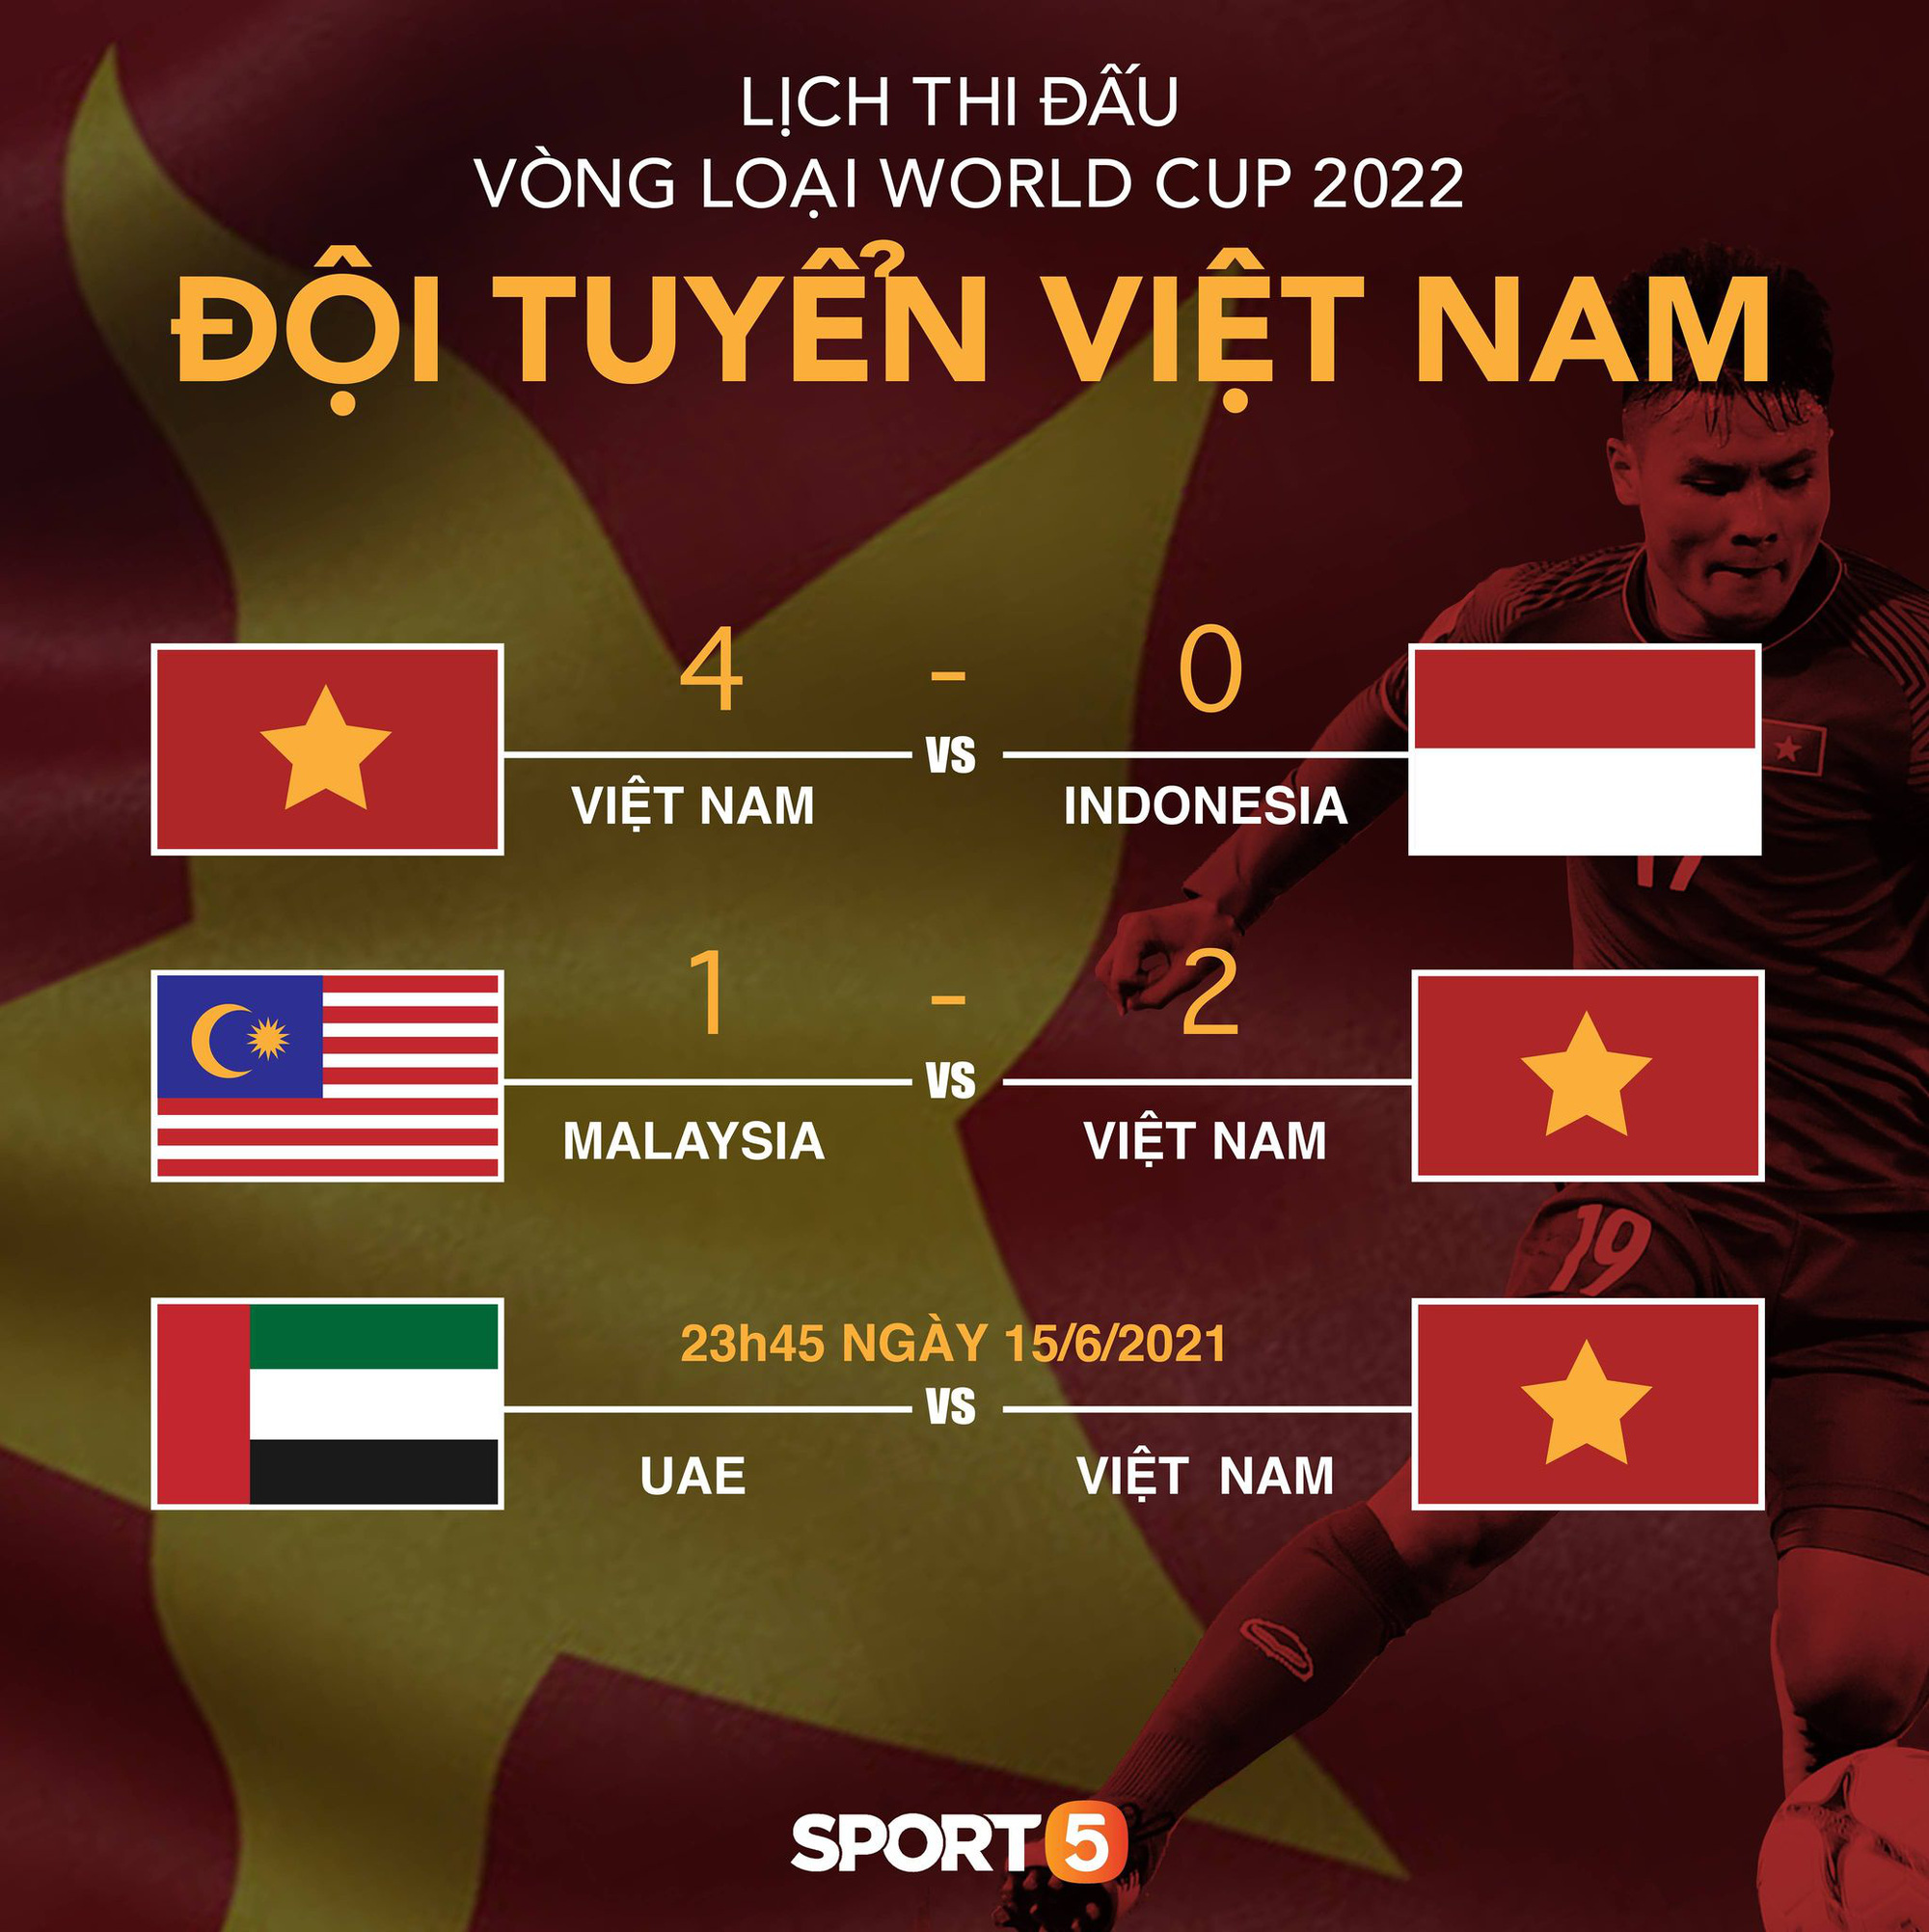 Tất tần tật về vòng loại thứ 3 World Cup 2022 - ngưỡng cửa lịch sử mà tuyển Việt Nam sắp chạm tới - Ảnh 3.